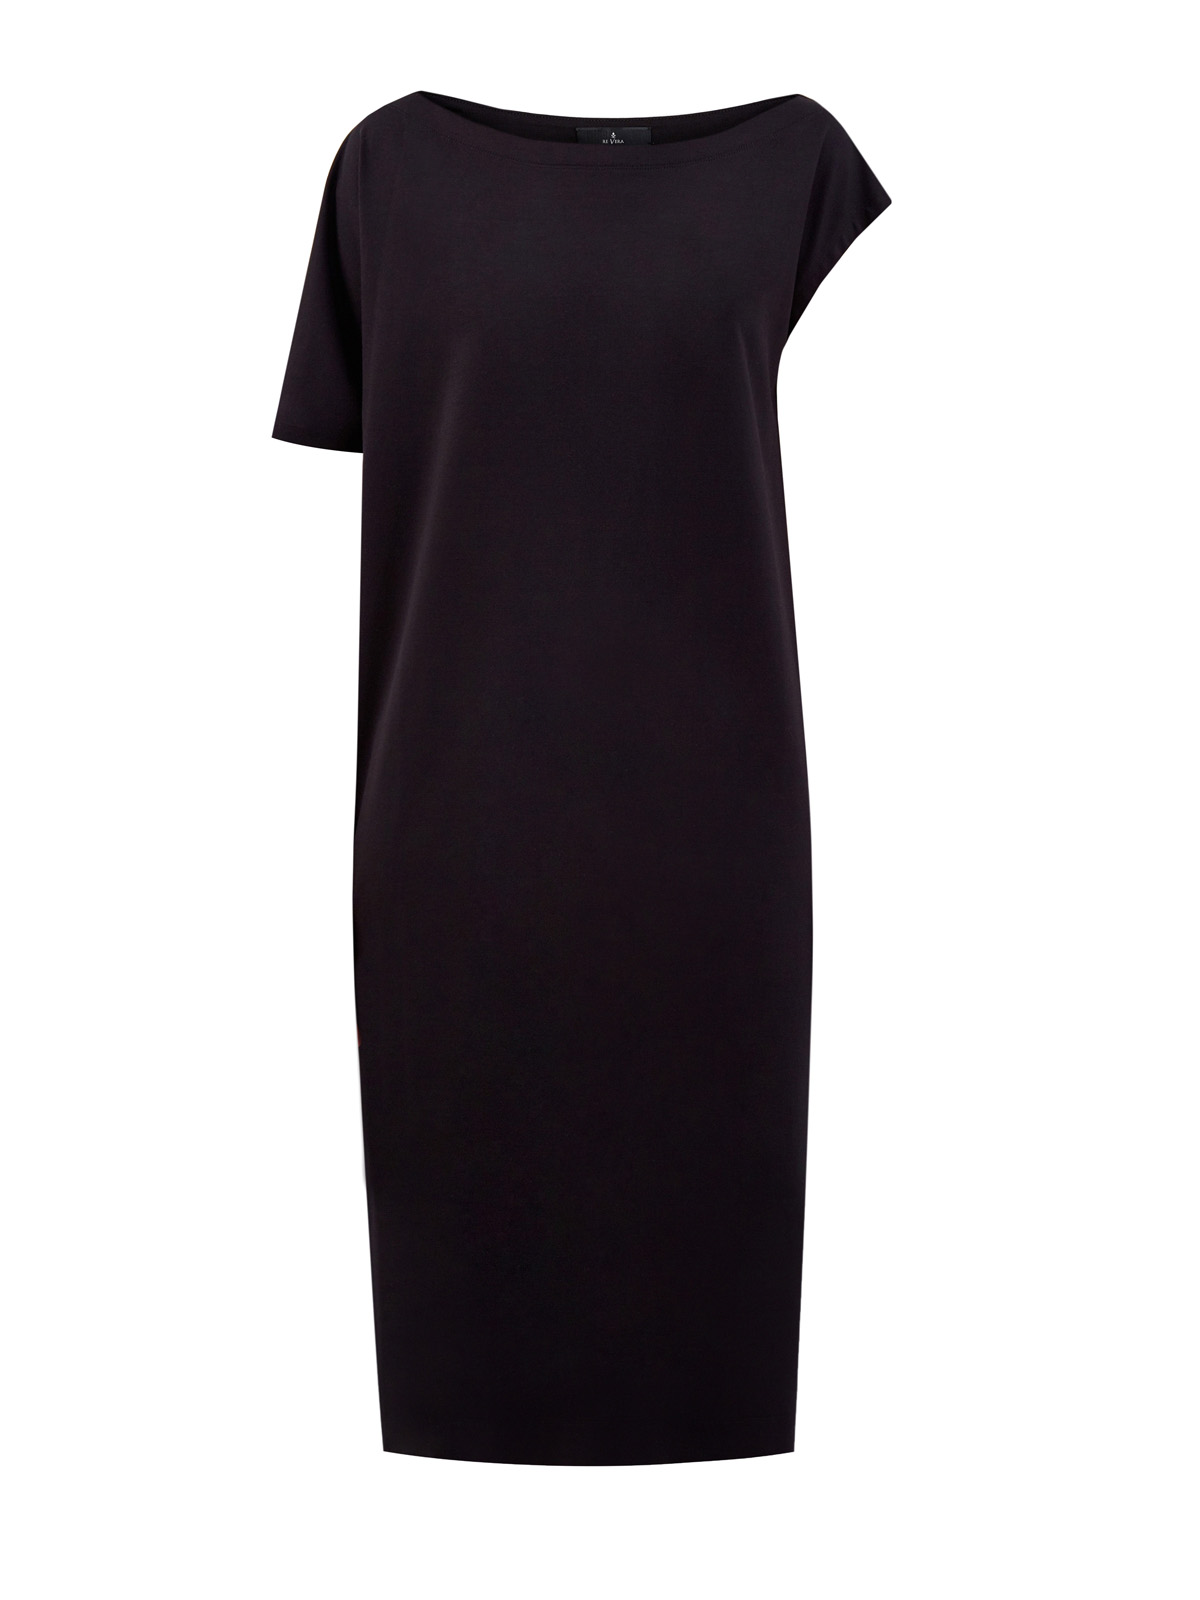 Хлопковое платье в расслабленном стиле с асимметричными рукавами RE VERA, цвет черный, размер M;L;XL;2XL;3XL;S - фото 1